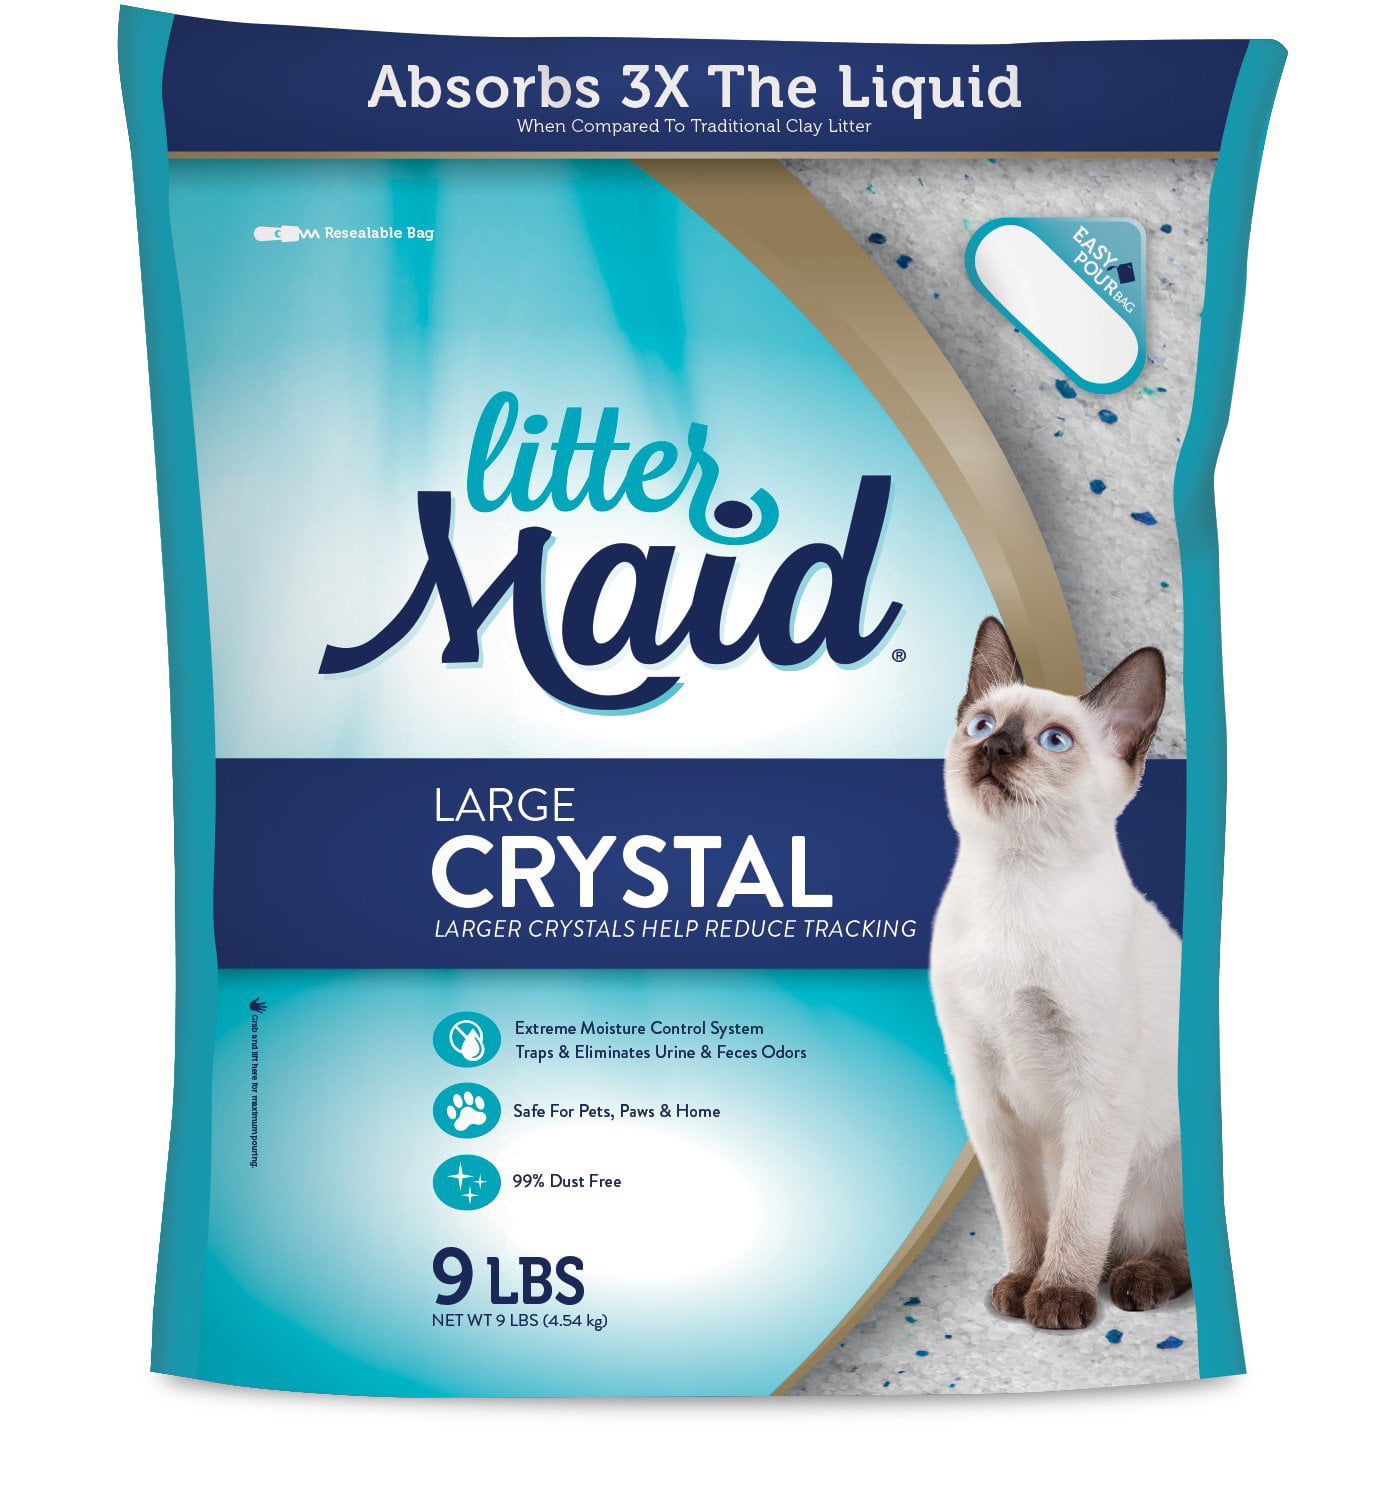 Blue Crystal Cat Litter Walmart